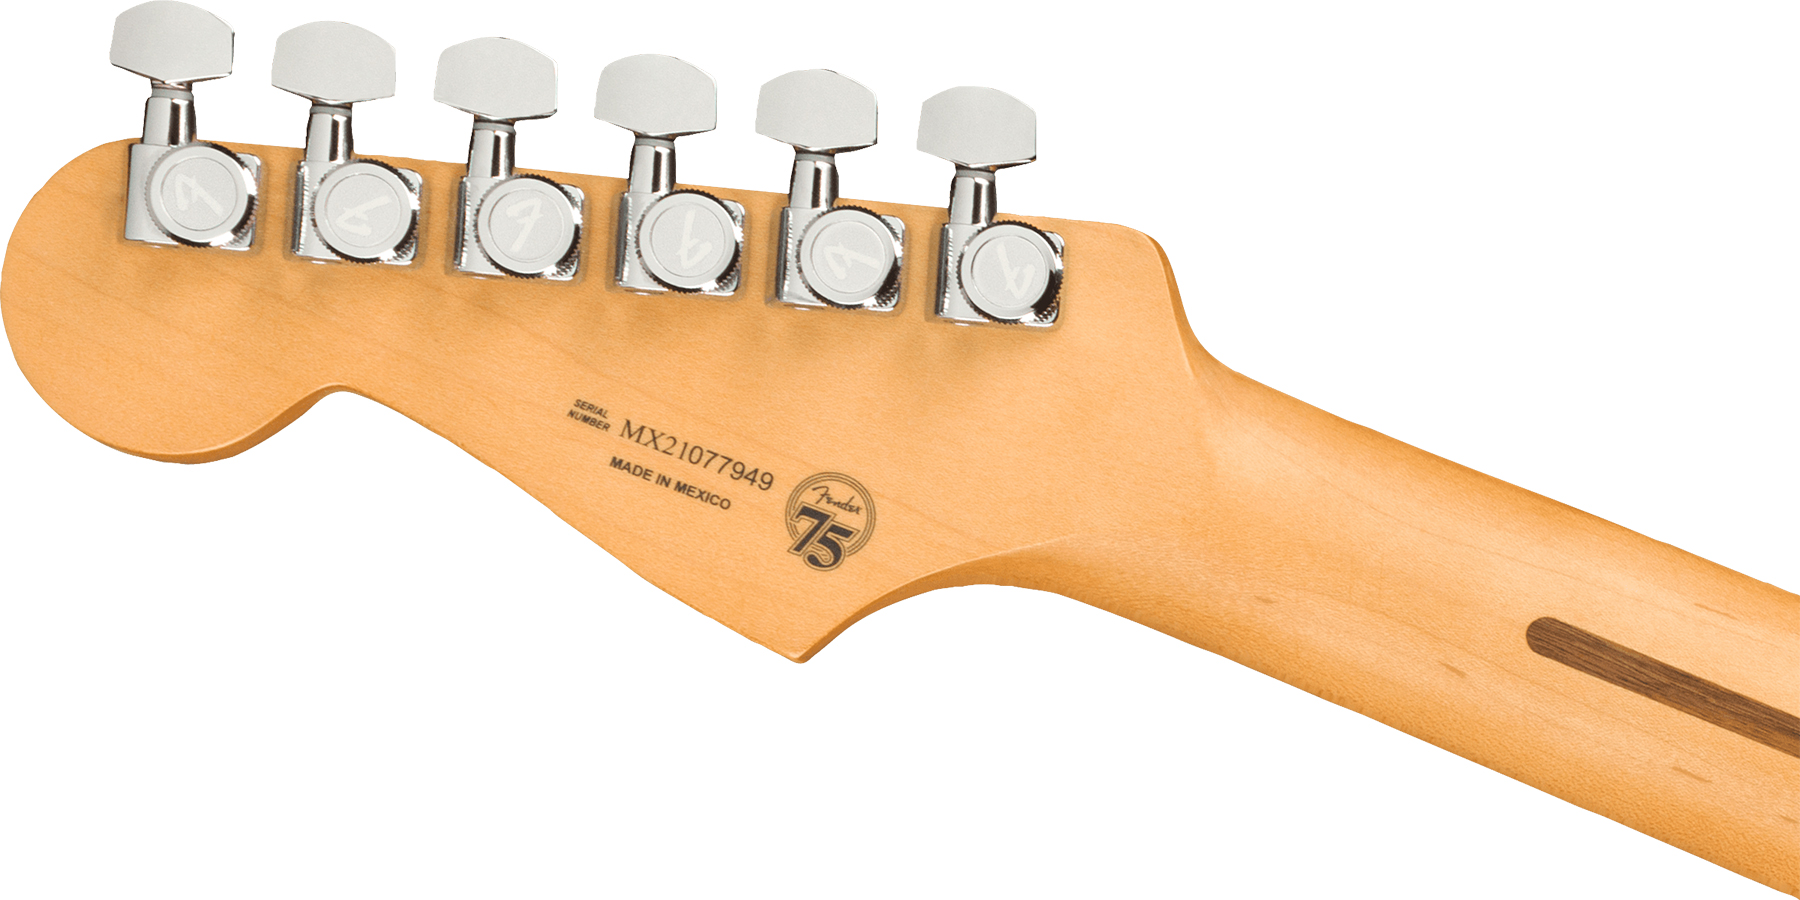 Fender Strat Player Plus Lh Mex Gaucher 3s Trem Mn - 3-color Sunburst - Linkshandige elektrische gitaar - Variation 3